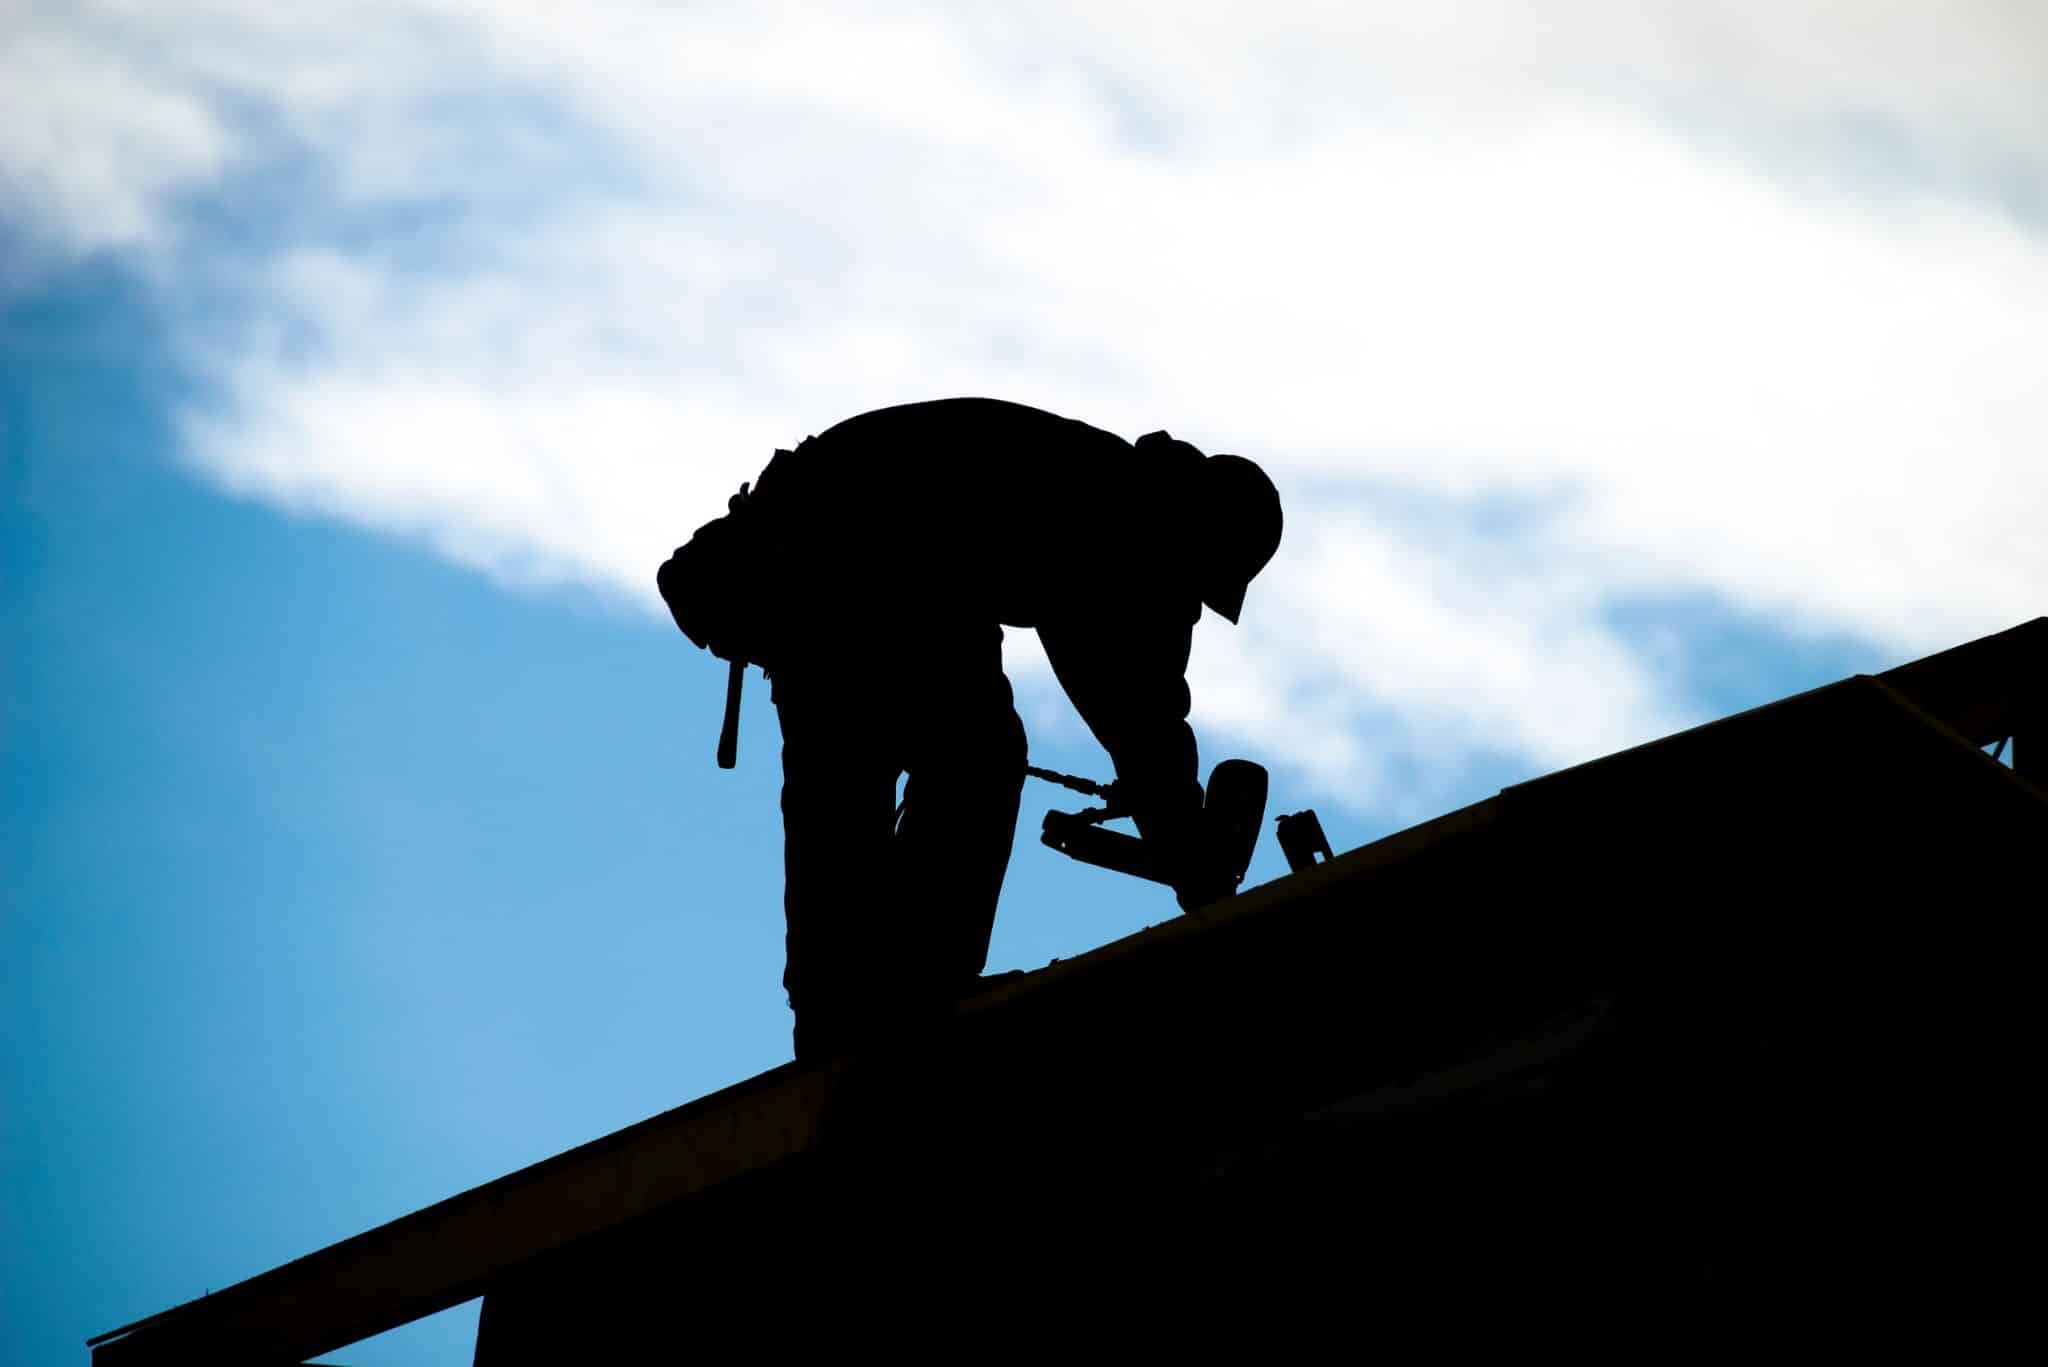 Eine Dachsanierung steigert den Wert Ihres Hauses. Aber mit welchen Kosten kann man bei rechnen? Wir sagen es Ihnen!